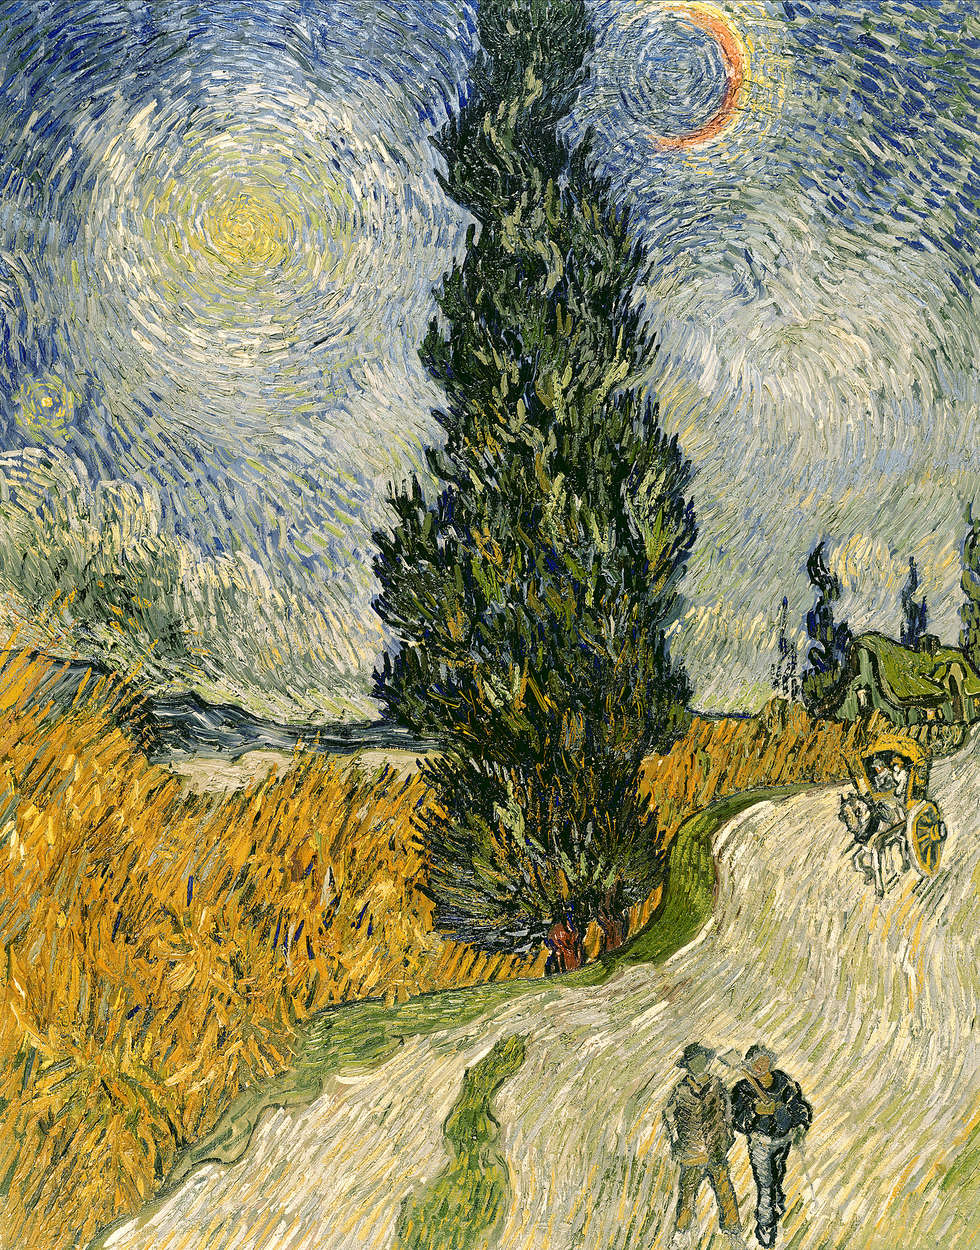             Papier peint panoramique "Rue avec cyprès et étoile" de Vincent van Gogh
        